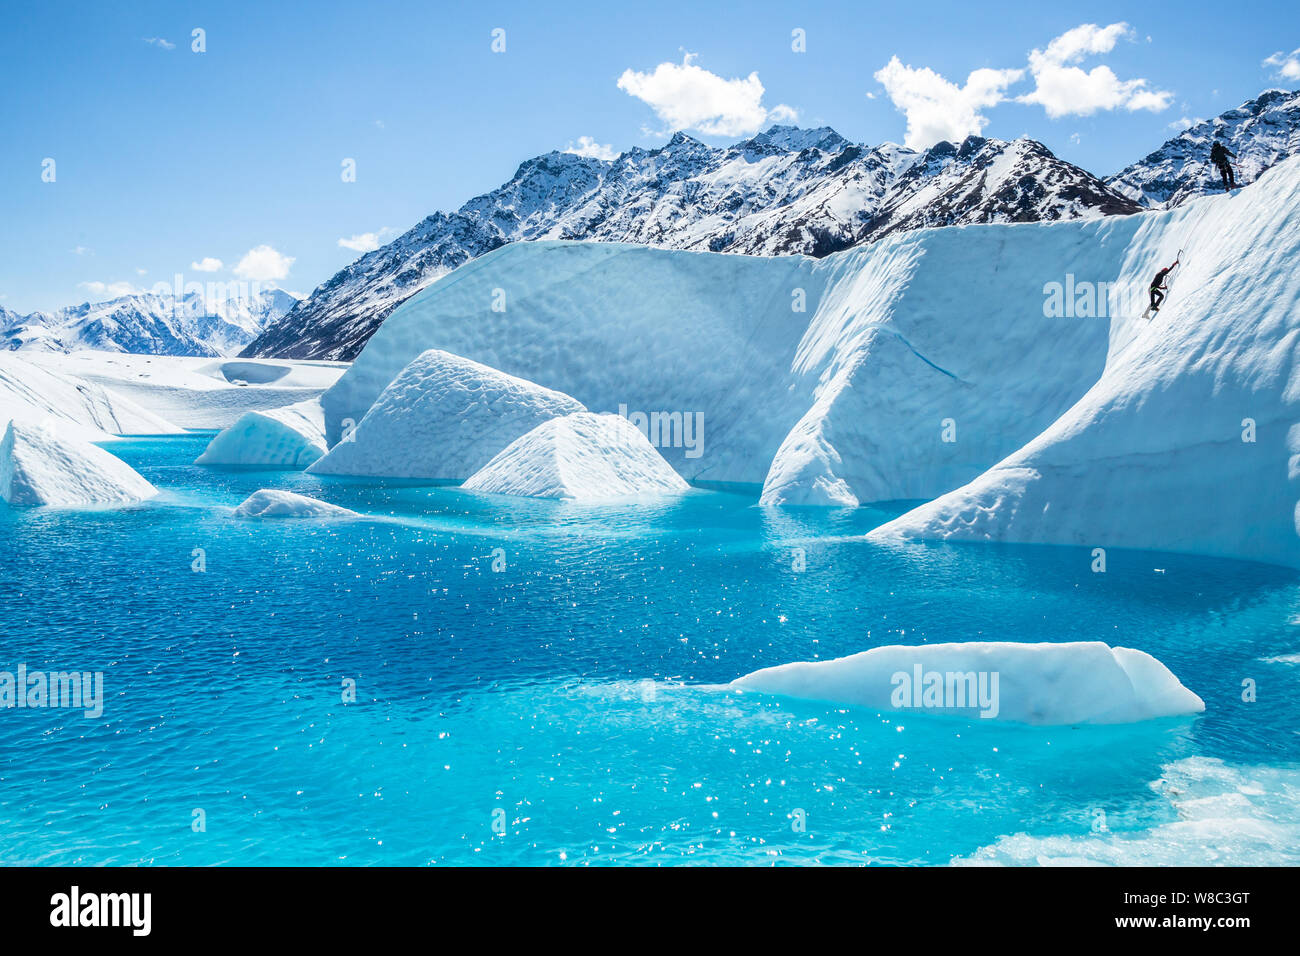 Ice climber aufsteigend eine Wand aus Eis in Richtung ihrer Kletterführer, vor einem tiefblauen See auf der Matanuska Gletscher in Alaska. Stockfoto